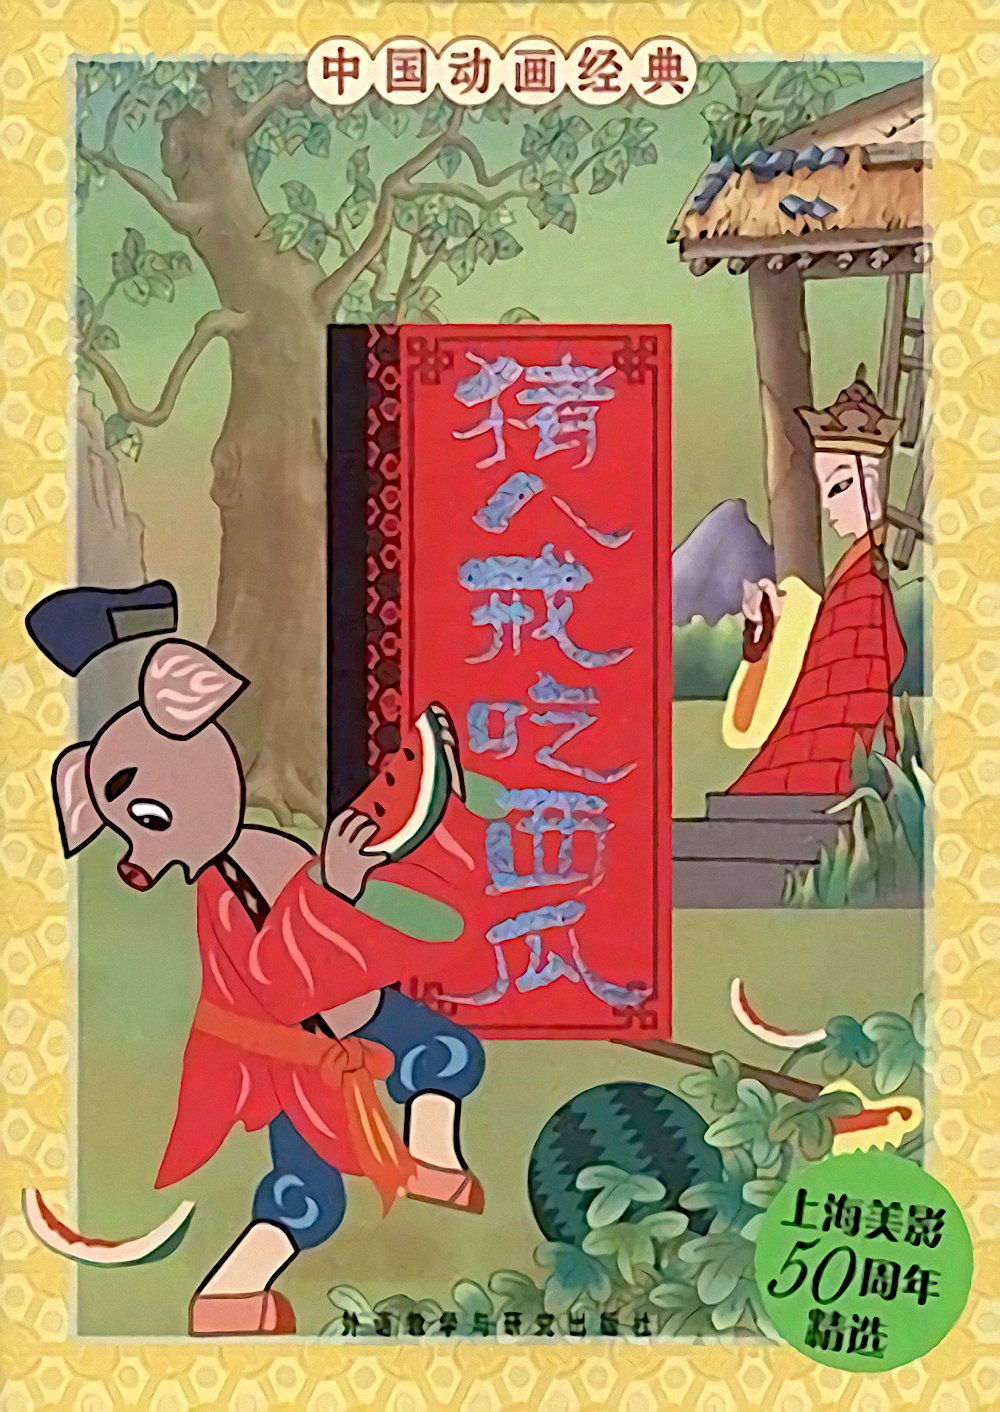 中国的第一部剪纸动画片